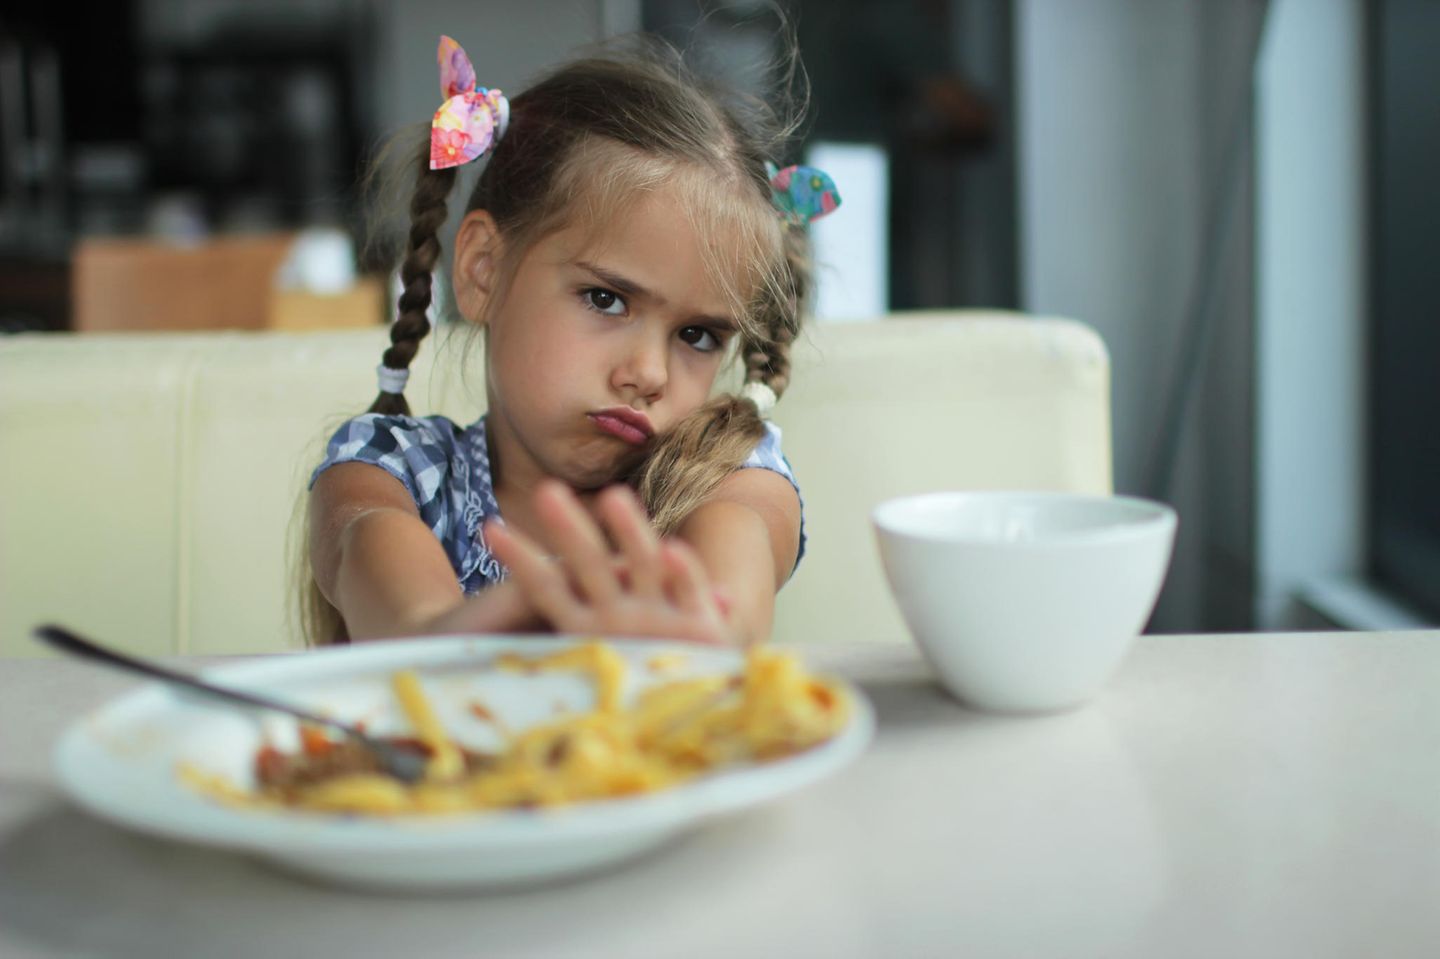 Mein Kind will nicht essen: Das hilft jetzt!: Kind verschmäht Teller mit Essen